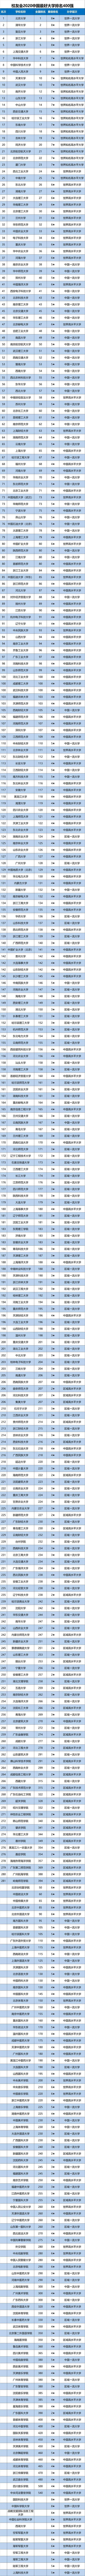 2020全国学校大排名_2020中国五大城市群大学排名出炉,这些高校领跑,附优